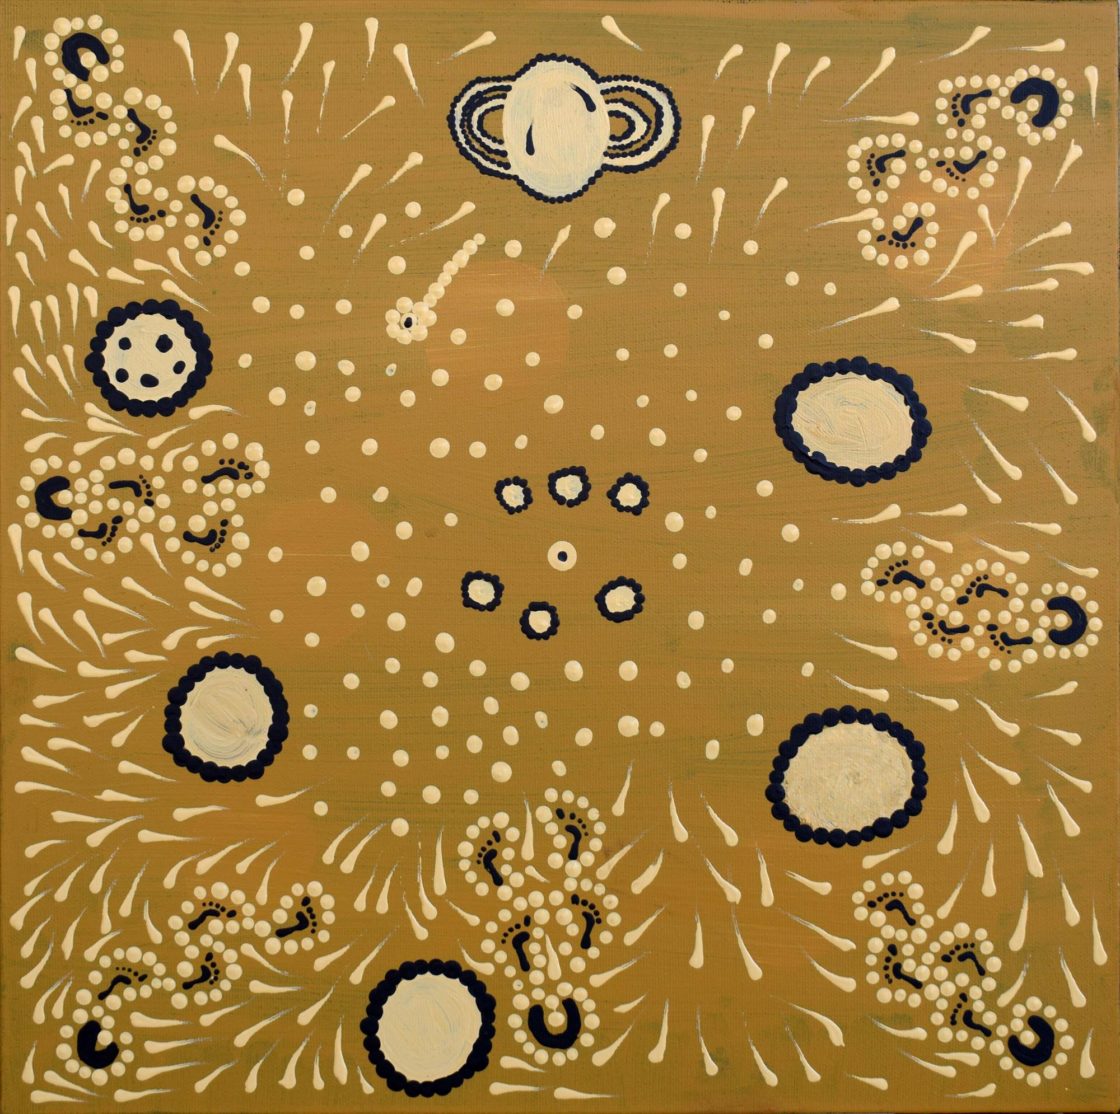 Kungkarrangkalpa (Seven Sisters) - Painting - Prudence Scott